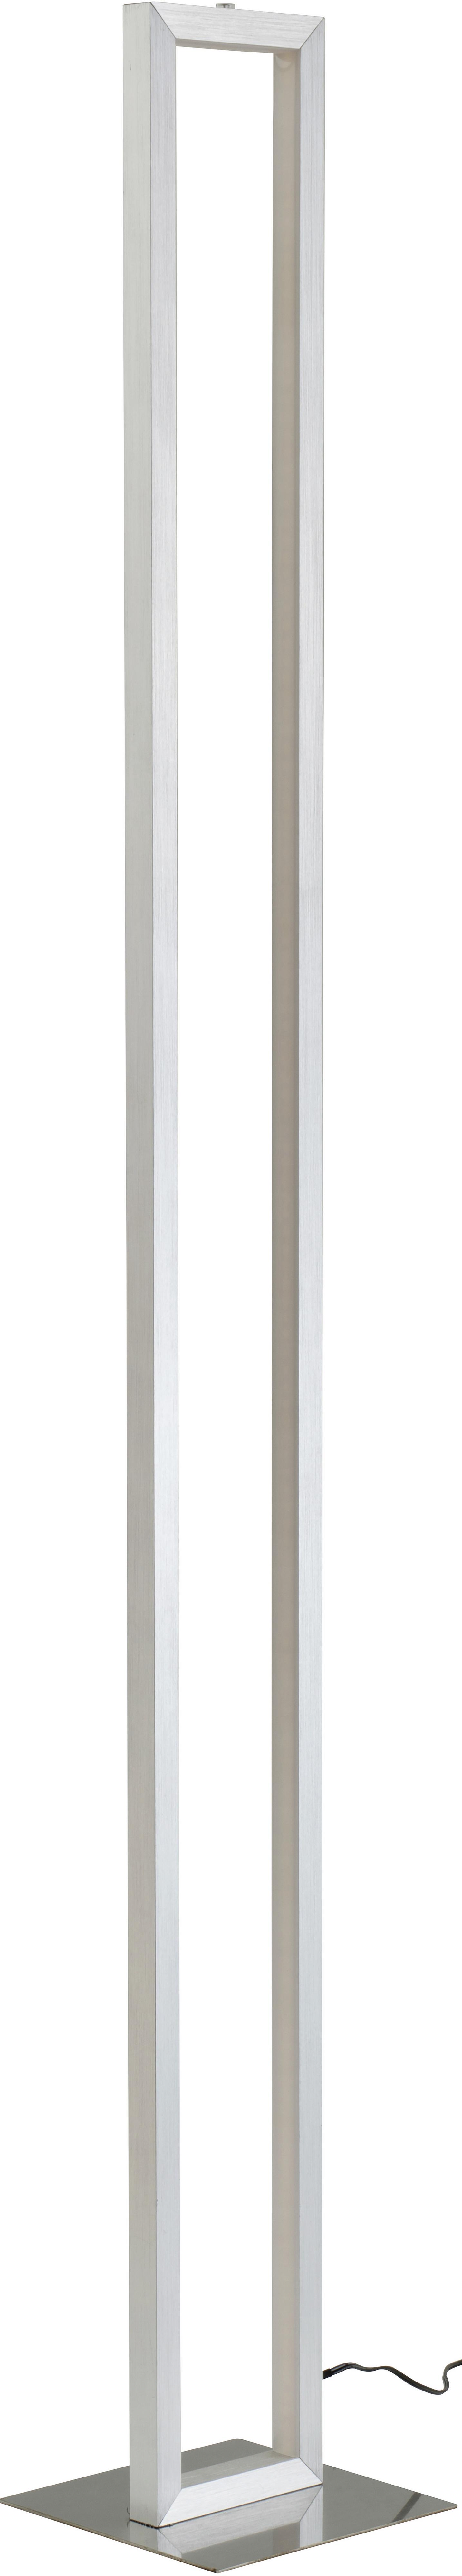 Podna Led Svjetiljka Erion - bijela/boje nikla, Konventionell, metal/plastika (16/16/120cm) - Premium Living